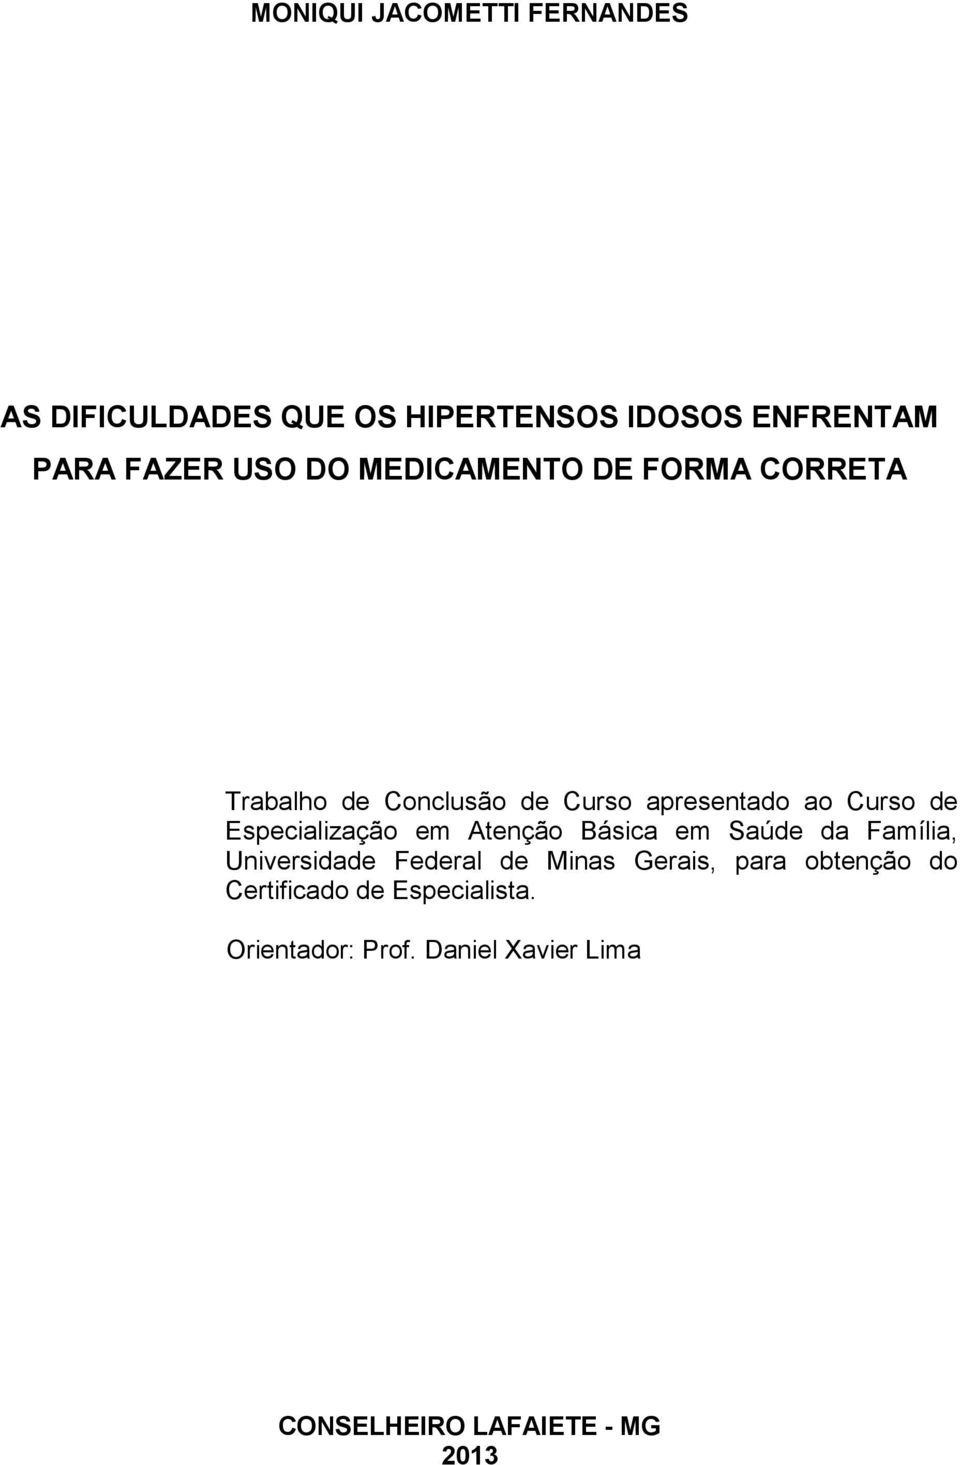 Especialização em Atenção Básica em Saúde da Família, Universidade Federal de Minas Gerais, para